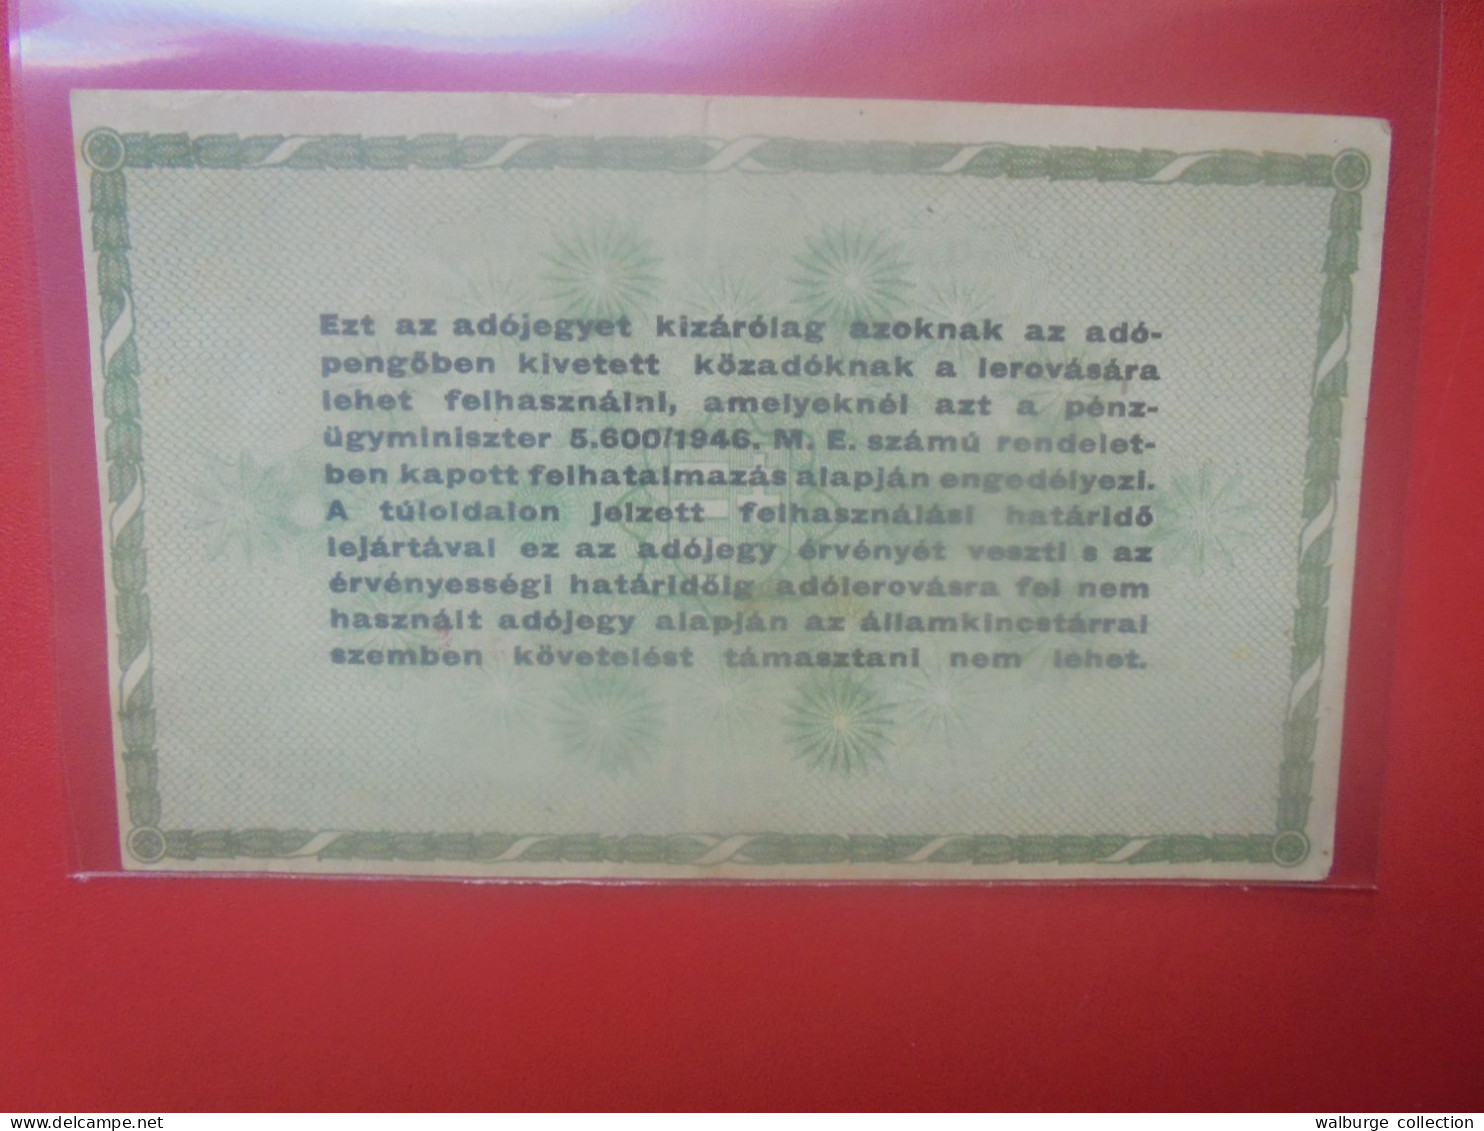 HONGRIE (TAX PENGÖ) 50.000 ADOPENGÖ 1946 Circuler (B.33) - Hungary